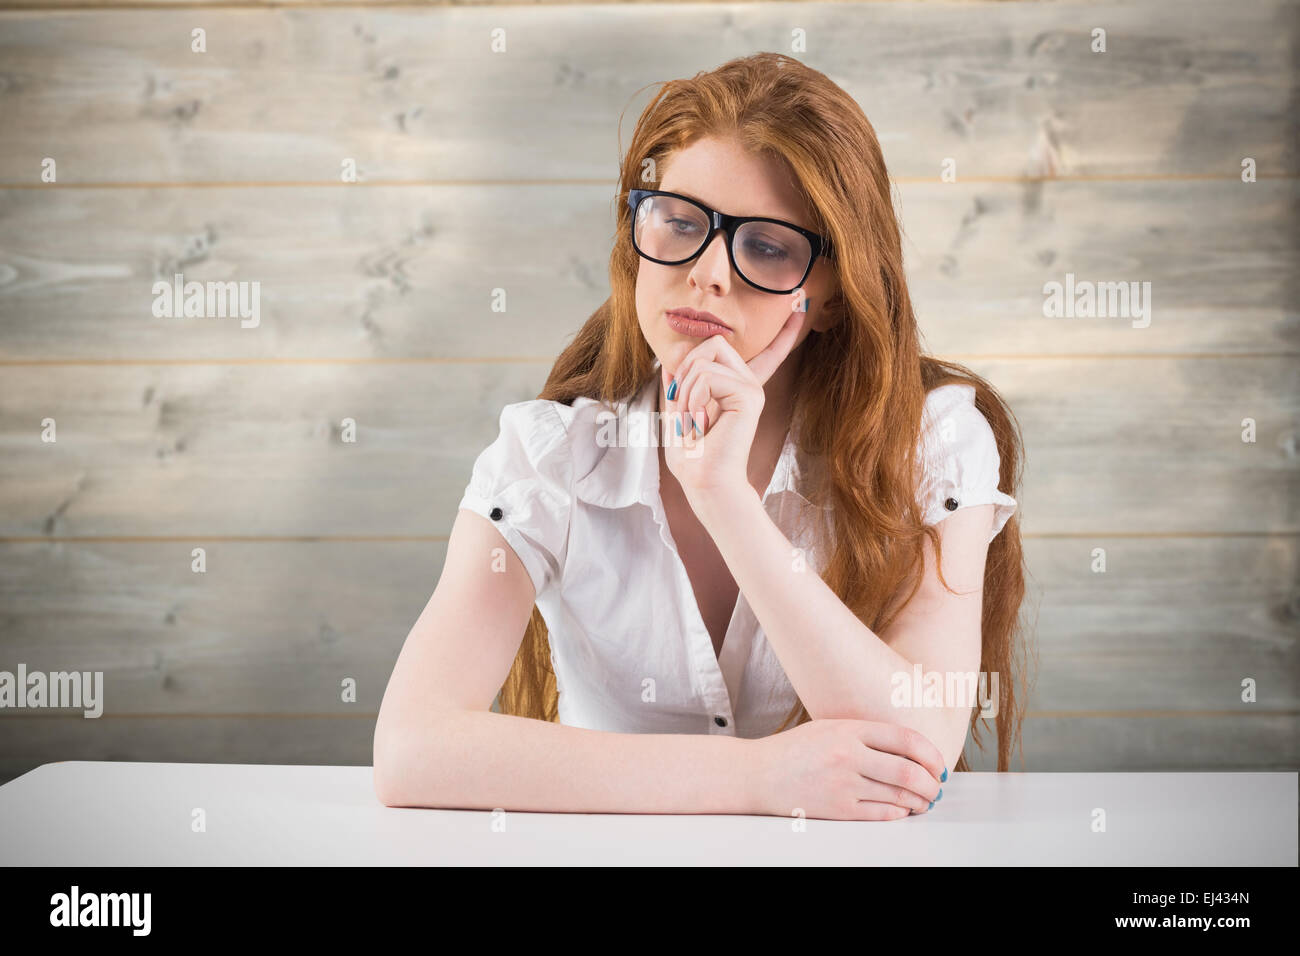 Immagine composita di pretty redhead pensando e guardando verso il basso Foto Stock